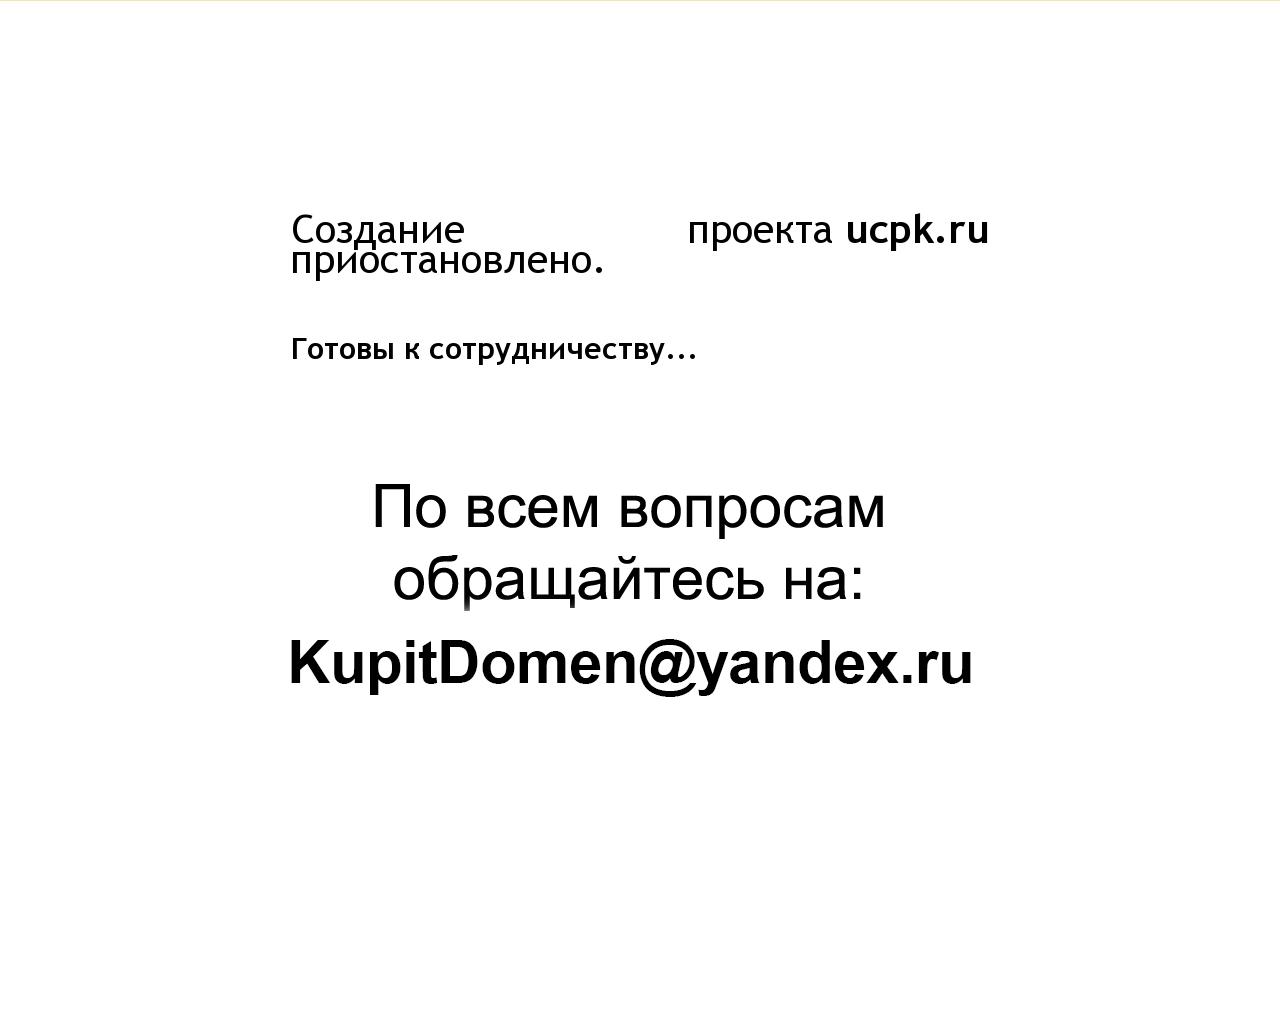 Изображение сайта ucpk.ru в разрешении 1280x1024